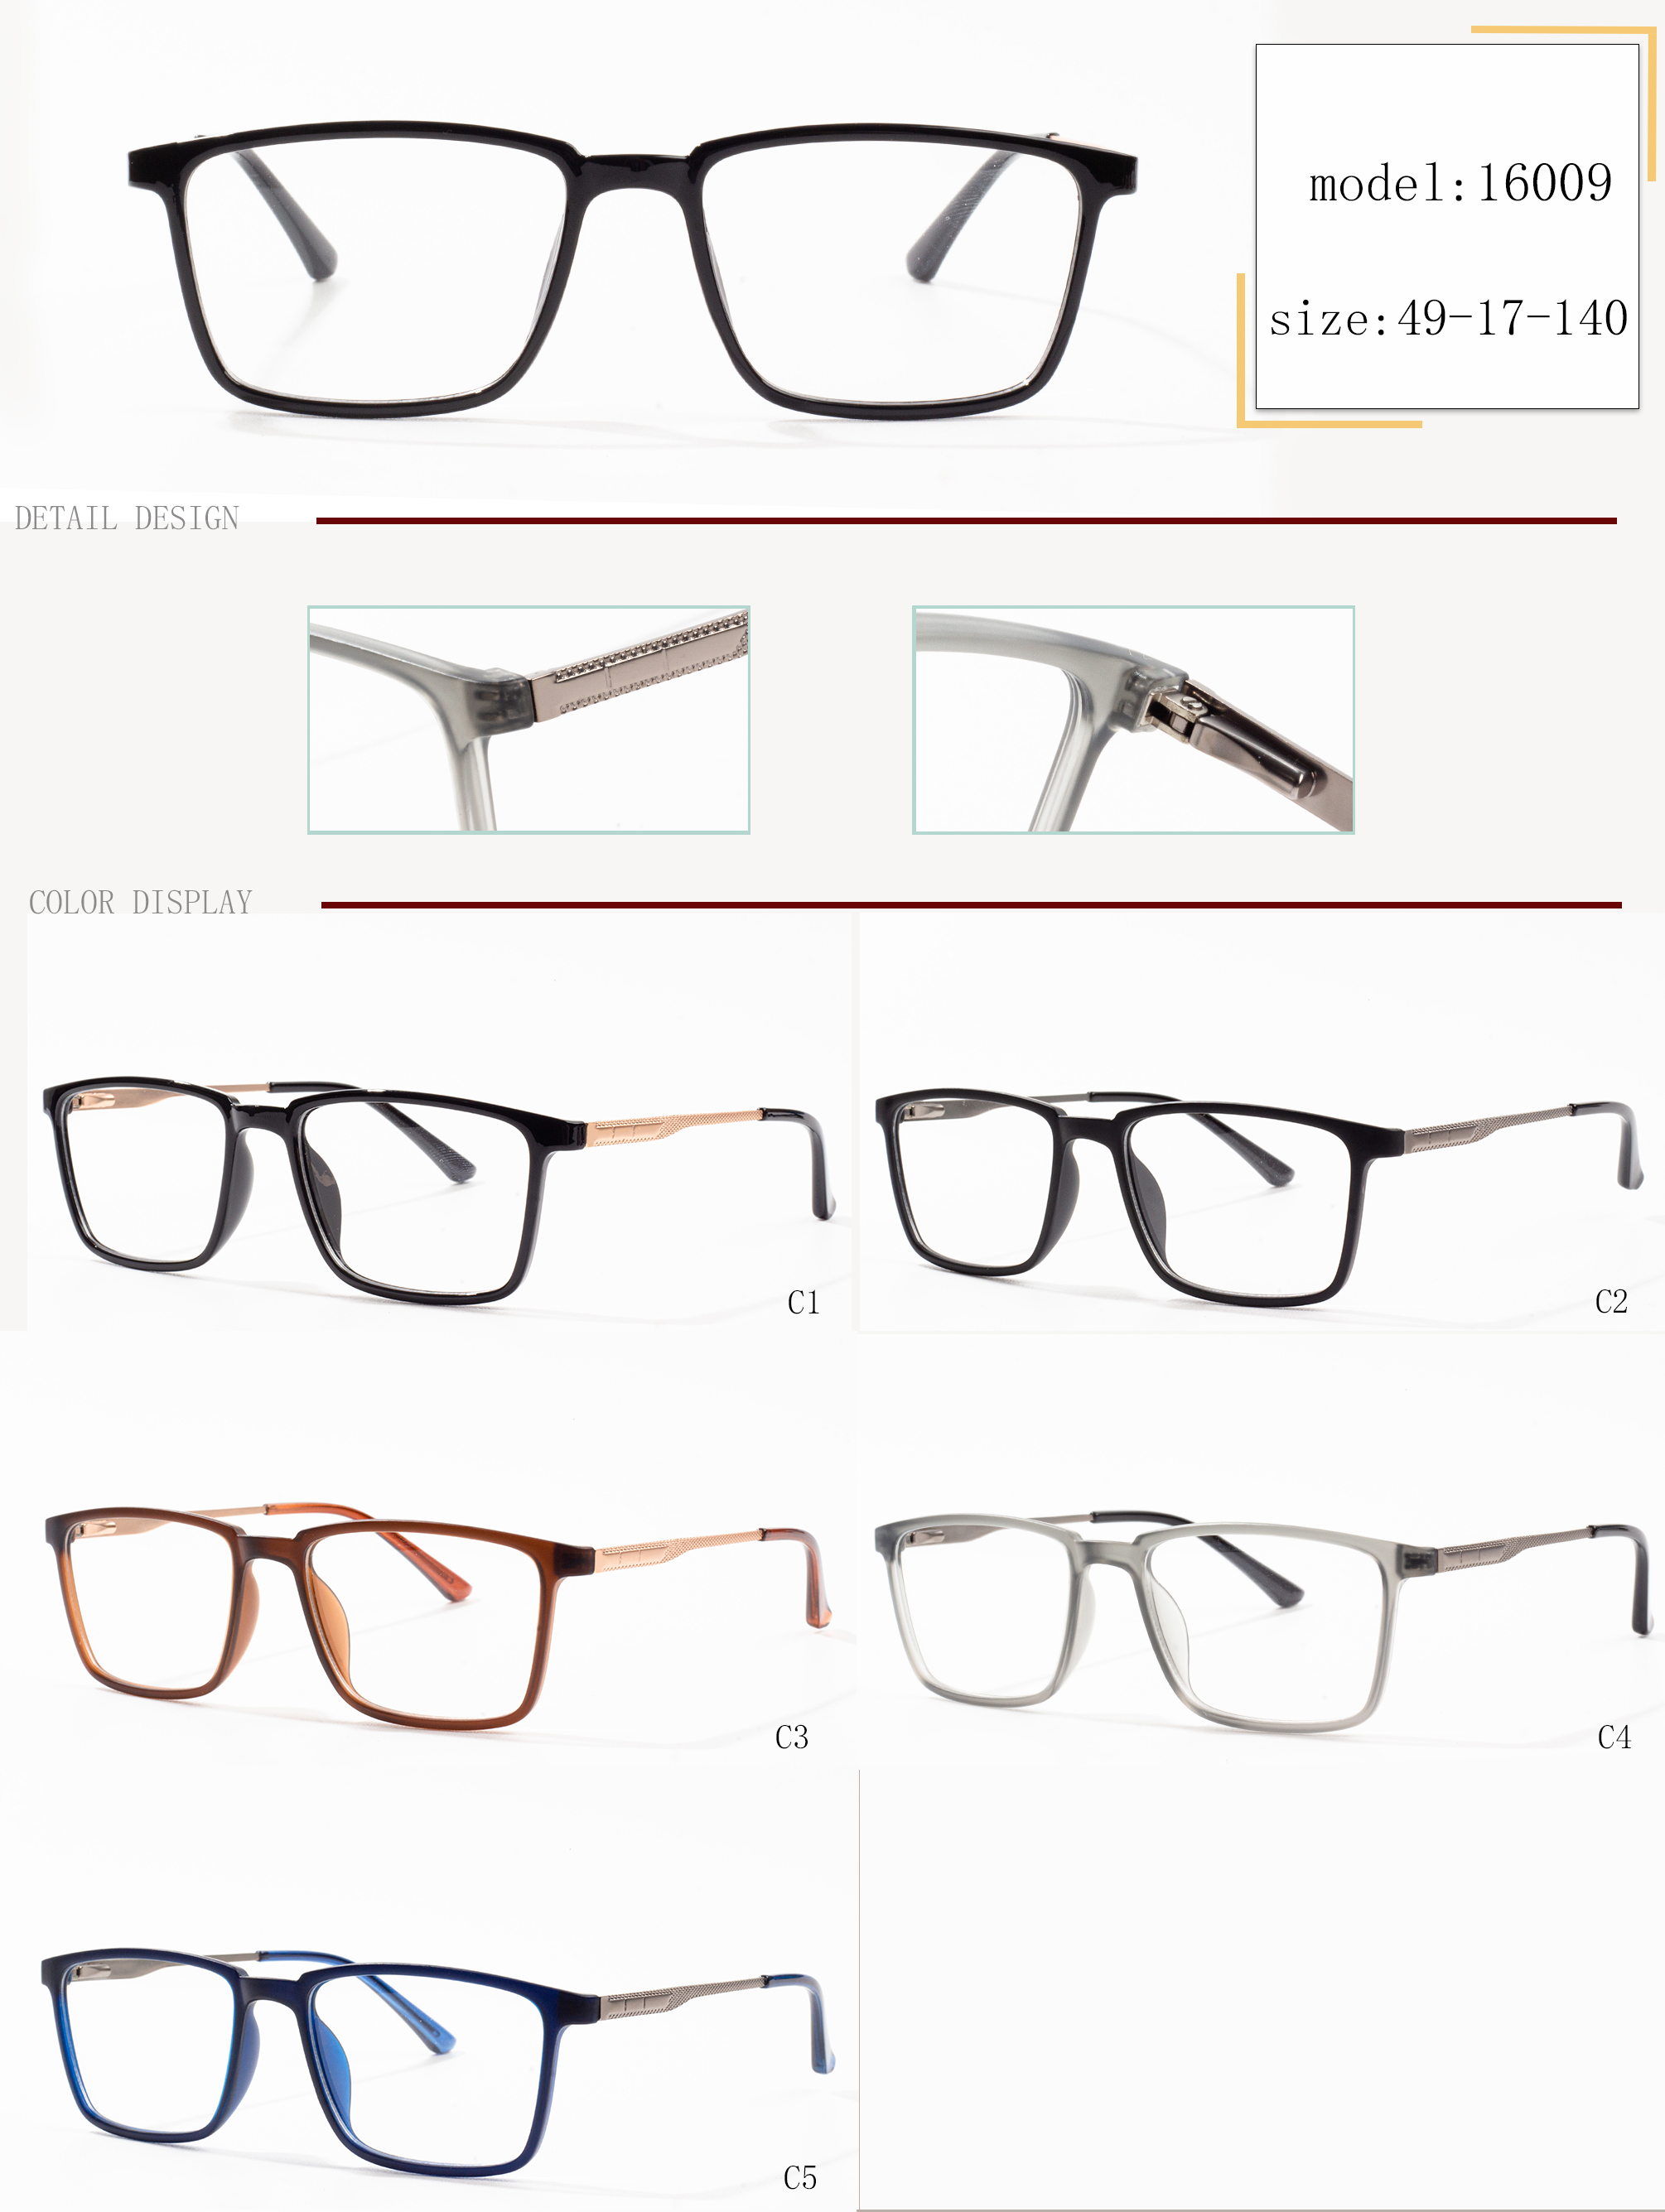 manlju brille frame